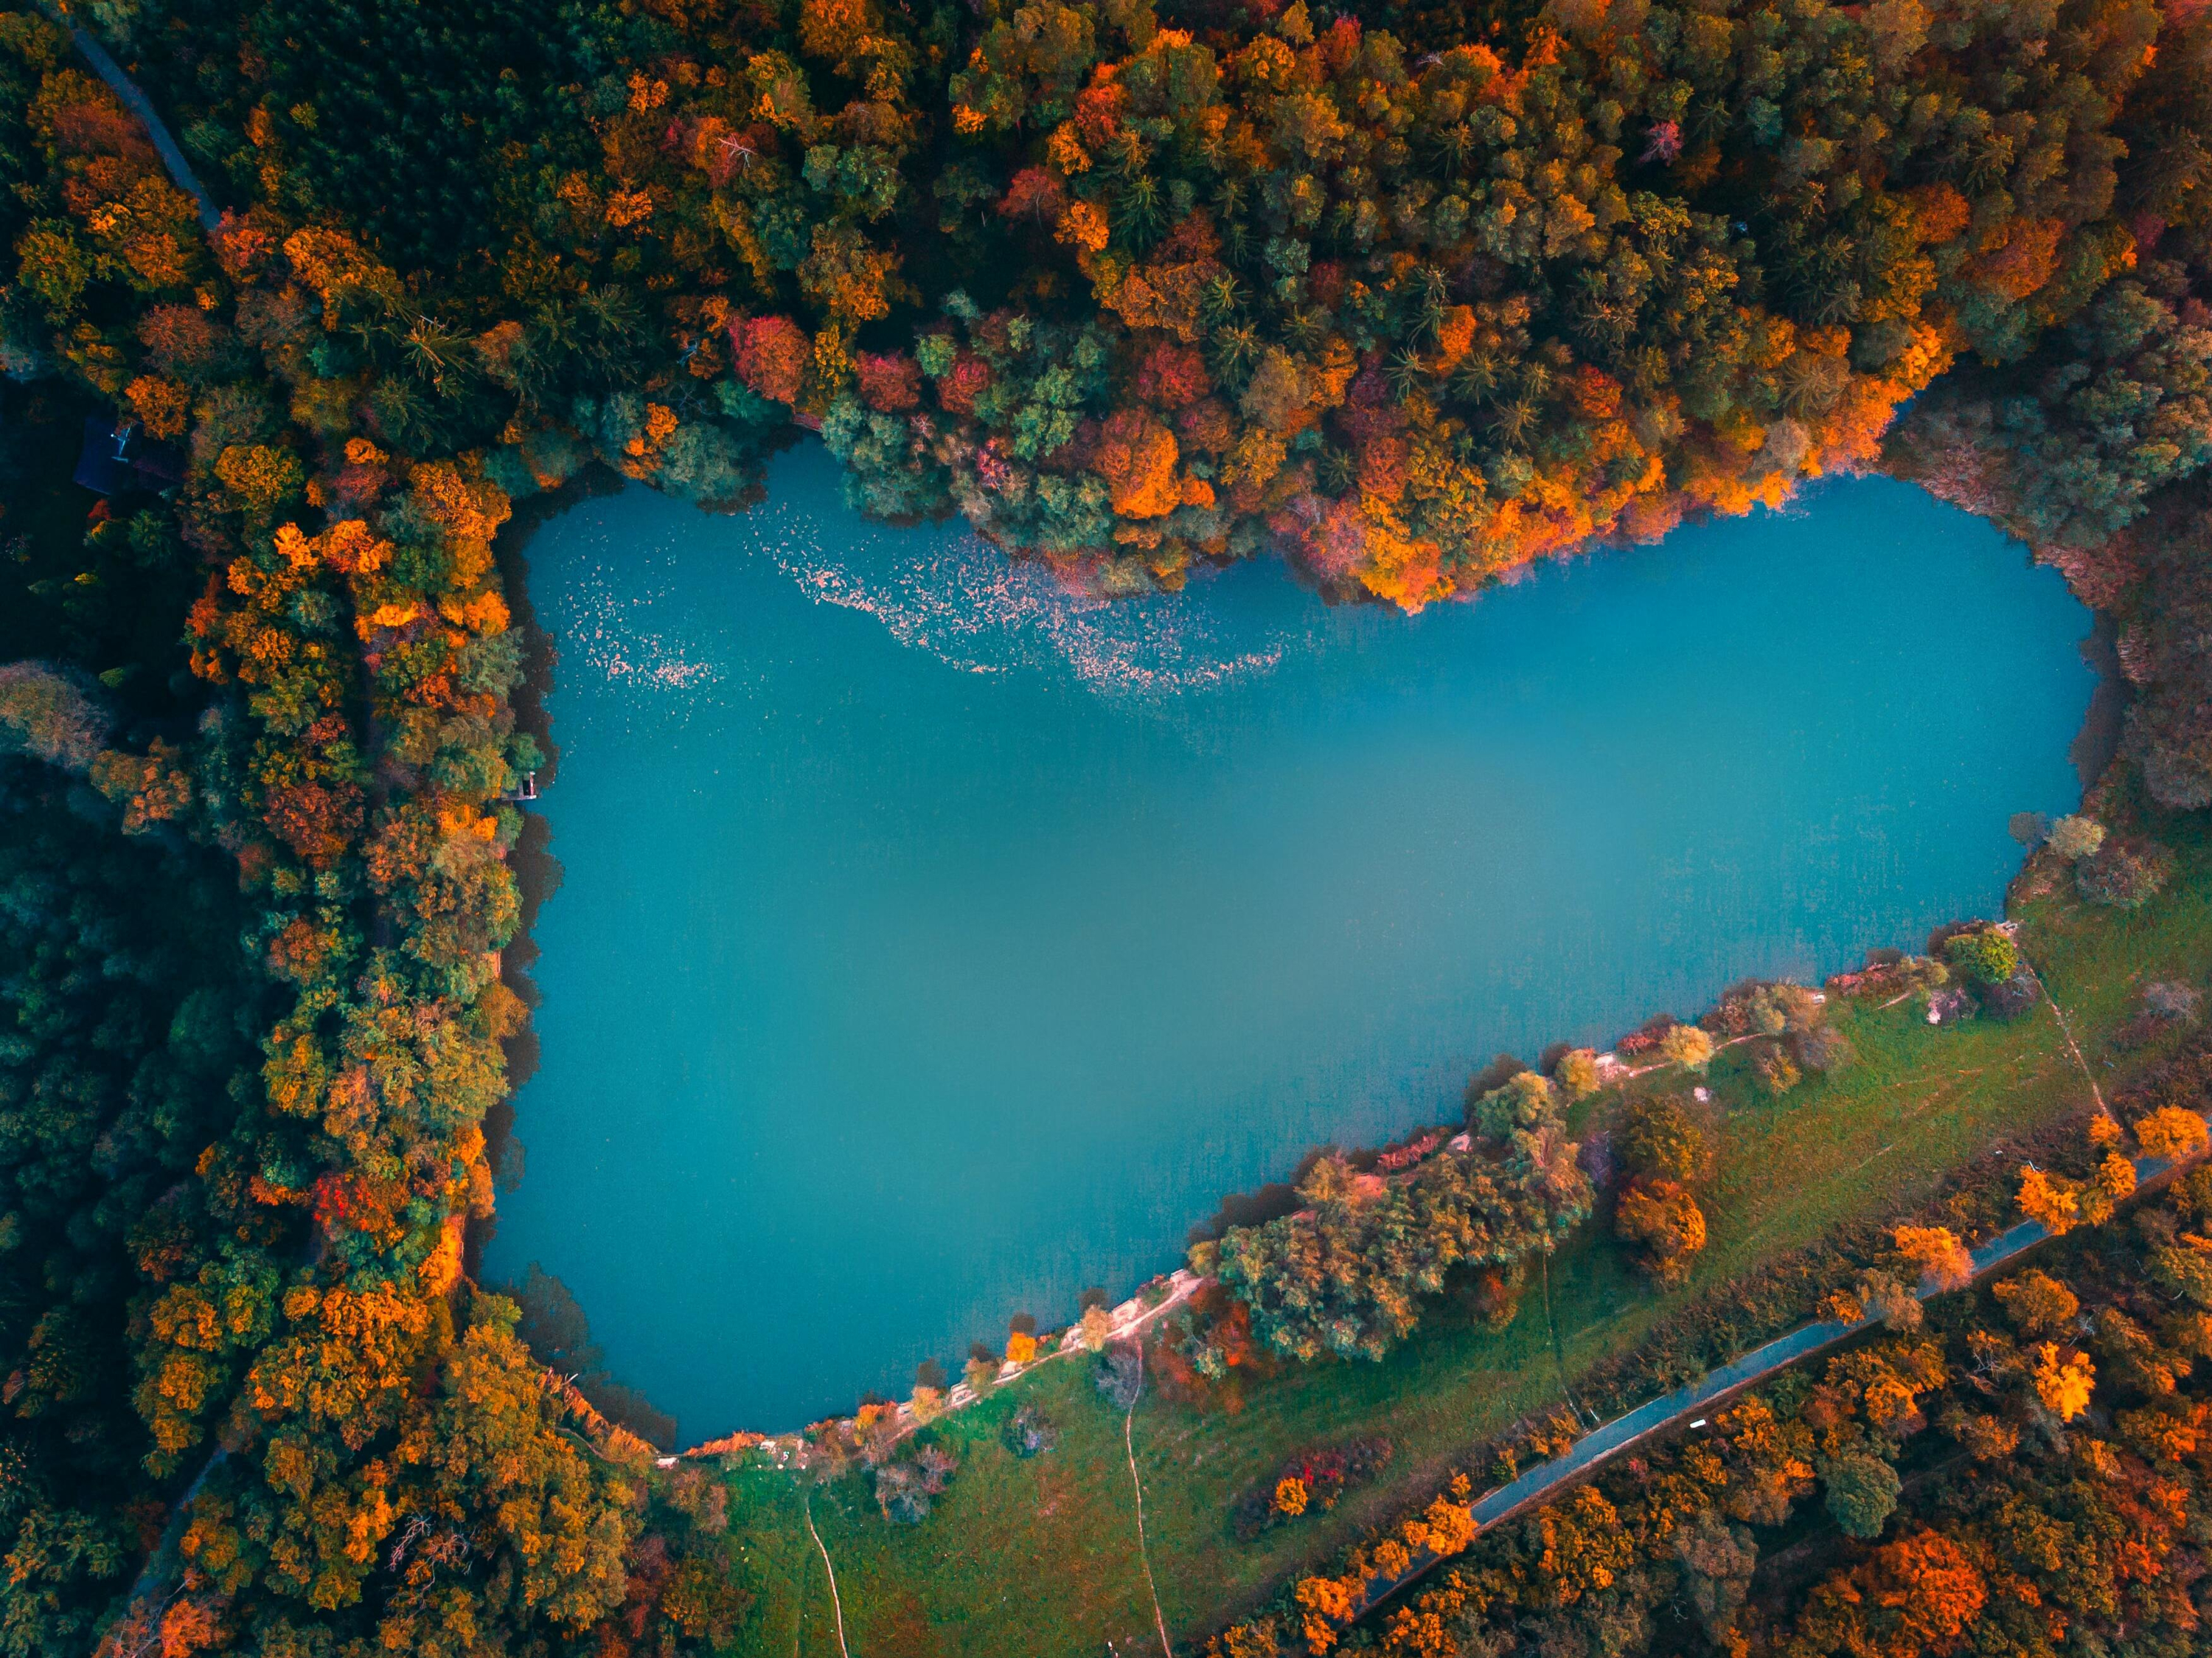 Fehér úti tó, Ágfalva, Hungary by Benjamin Voros